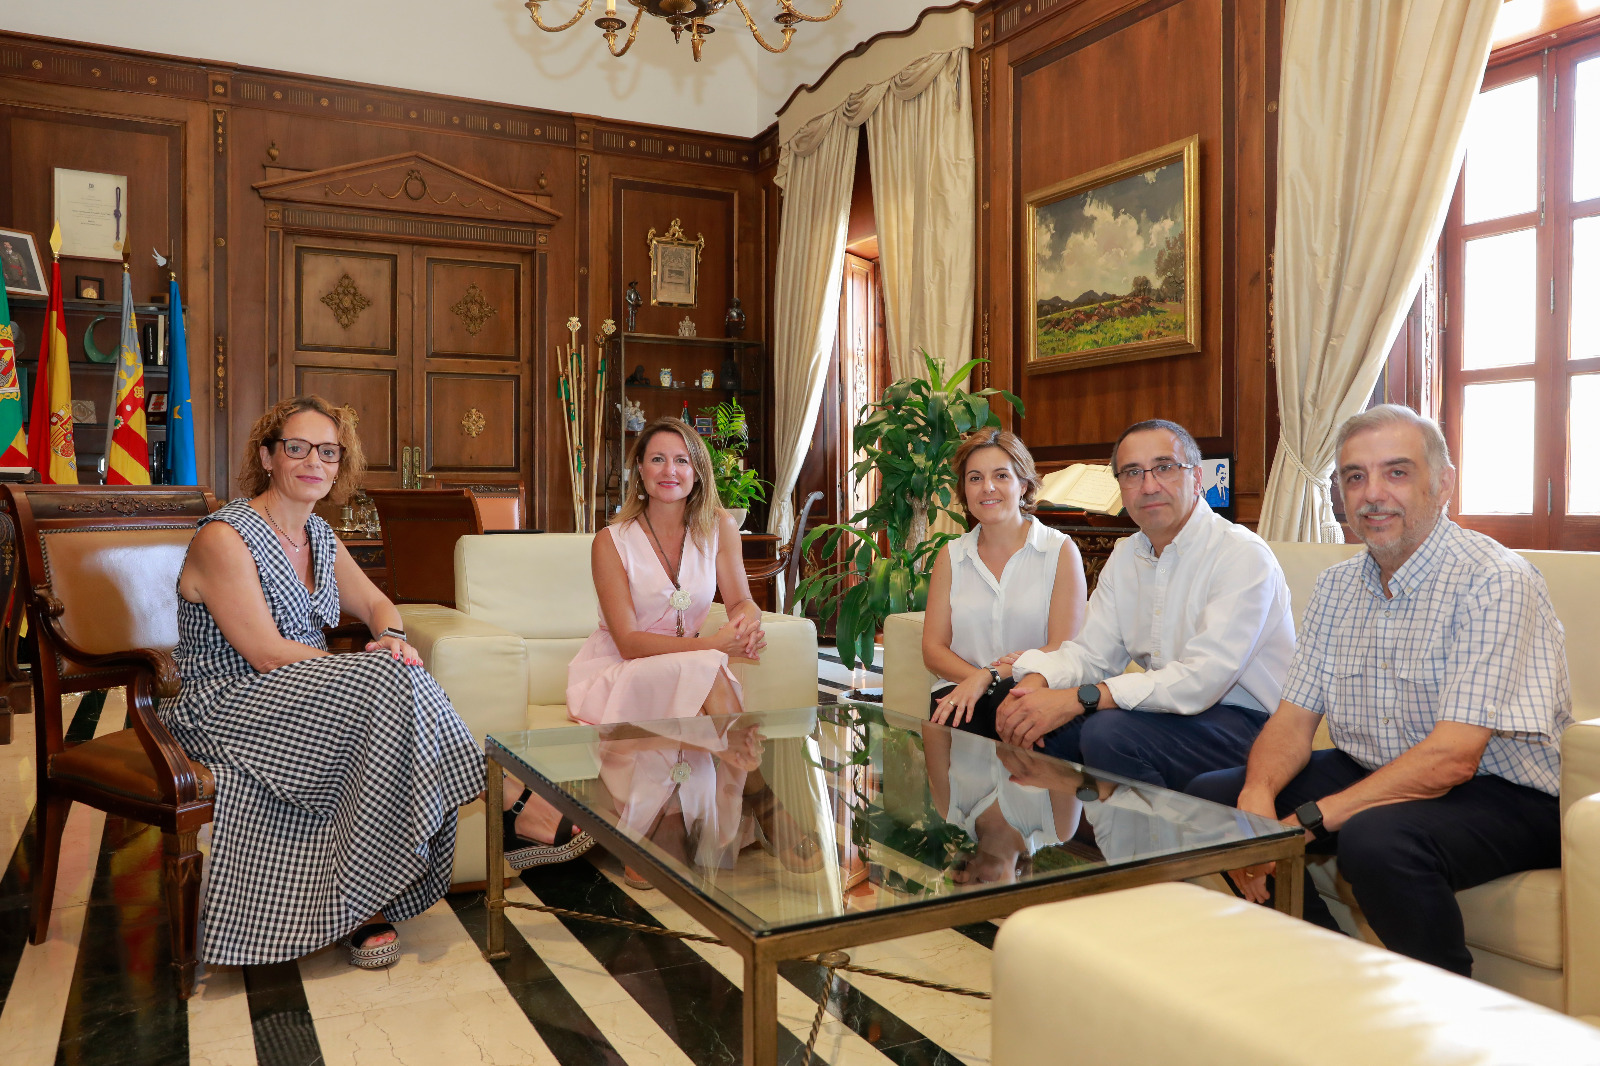 La alcaldesa ensalza el trabajo de la Junta de Fiestas a cuyos miembros reconoce su dedicación altruista por mantener vivo Castellón  y sus tradiciones